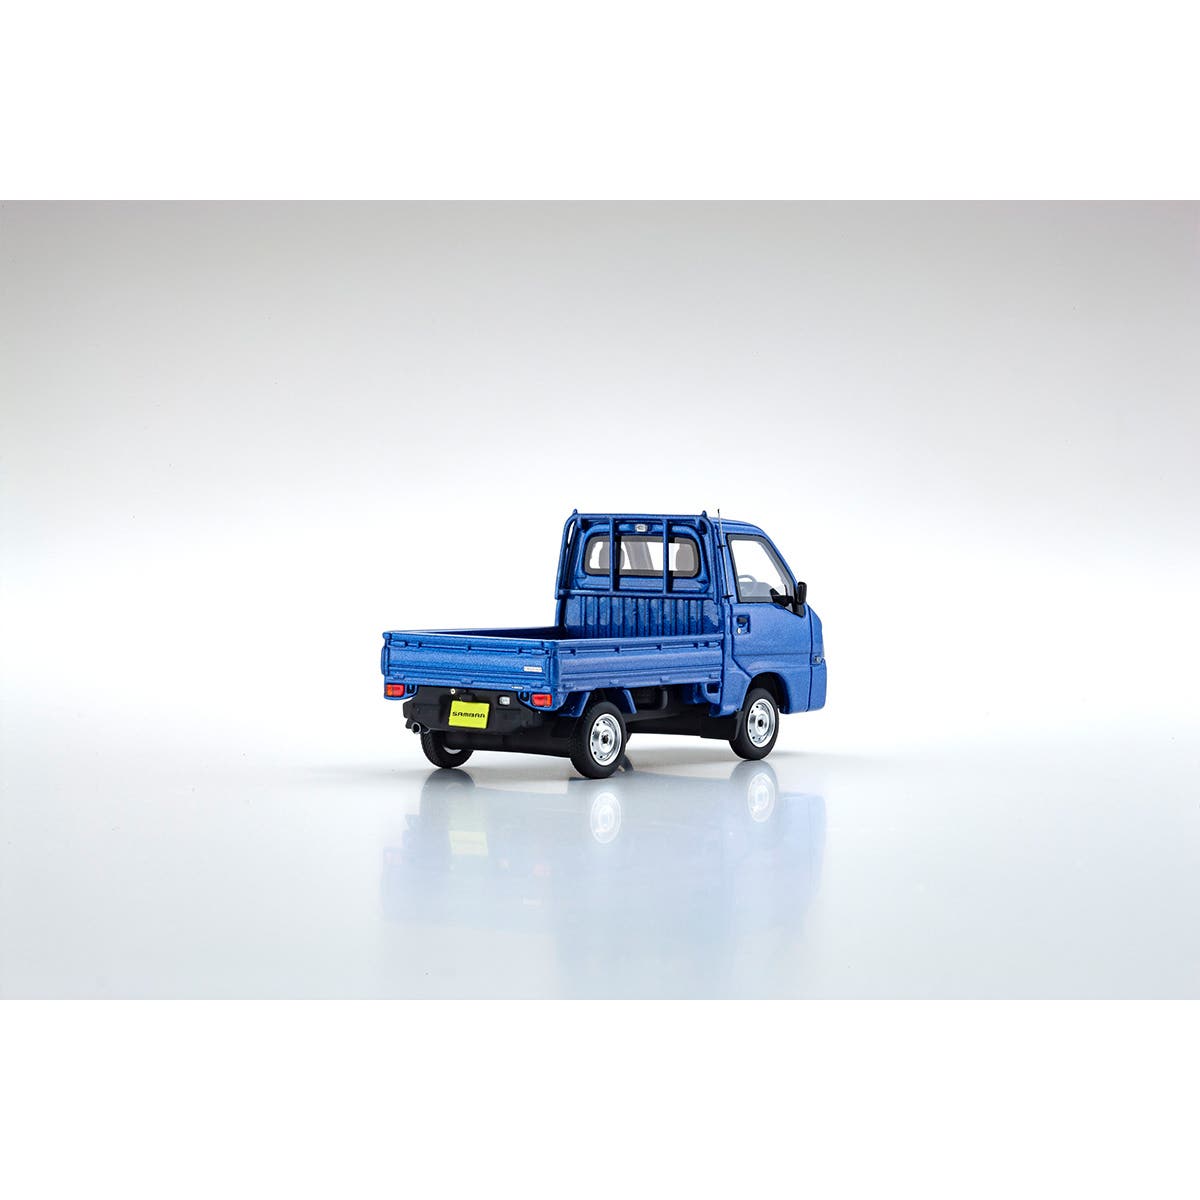 SUBARU SAMBAR TRUCK - Blue - 1:43 Scale Resin Model Truck